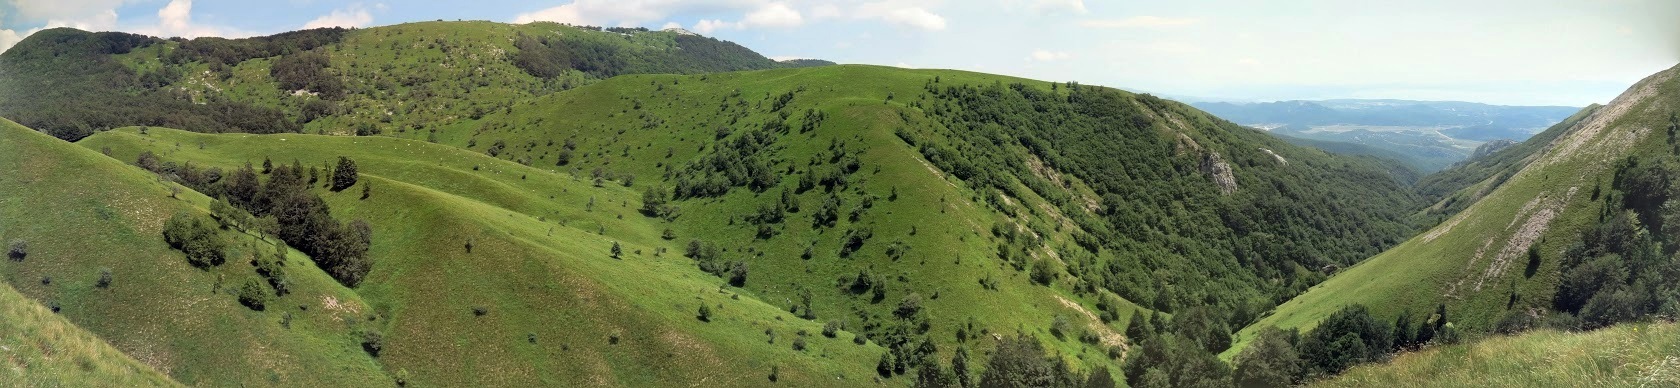 Zahodno se povzpnemo še na razgledni vrh Vidalj (1184 m) z izjemnim razgledom južno na sotesko Mudna dol